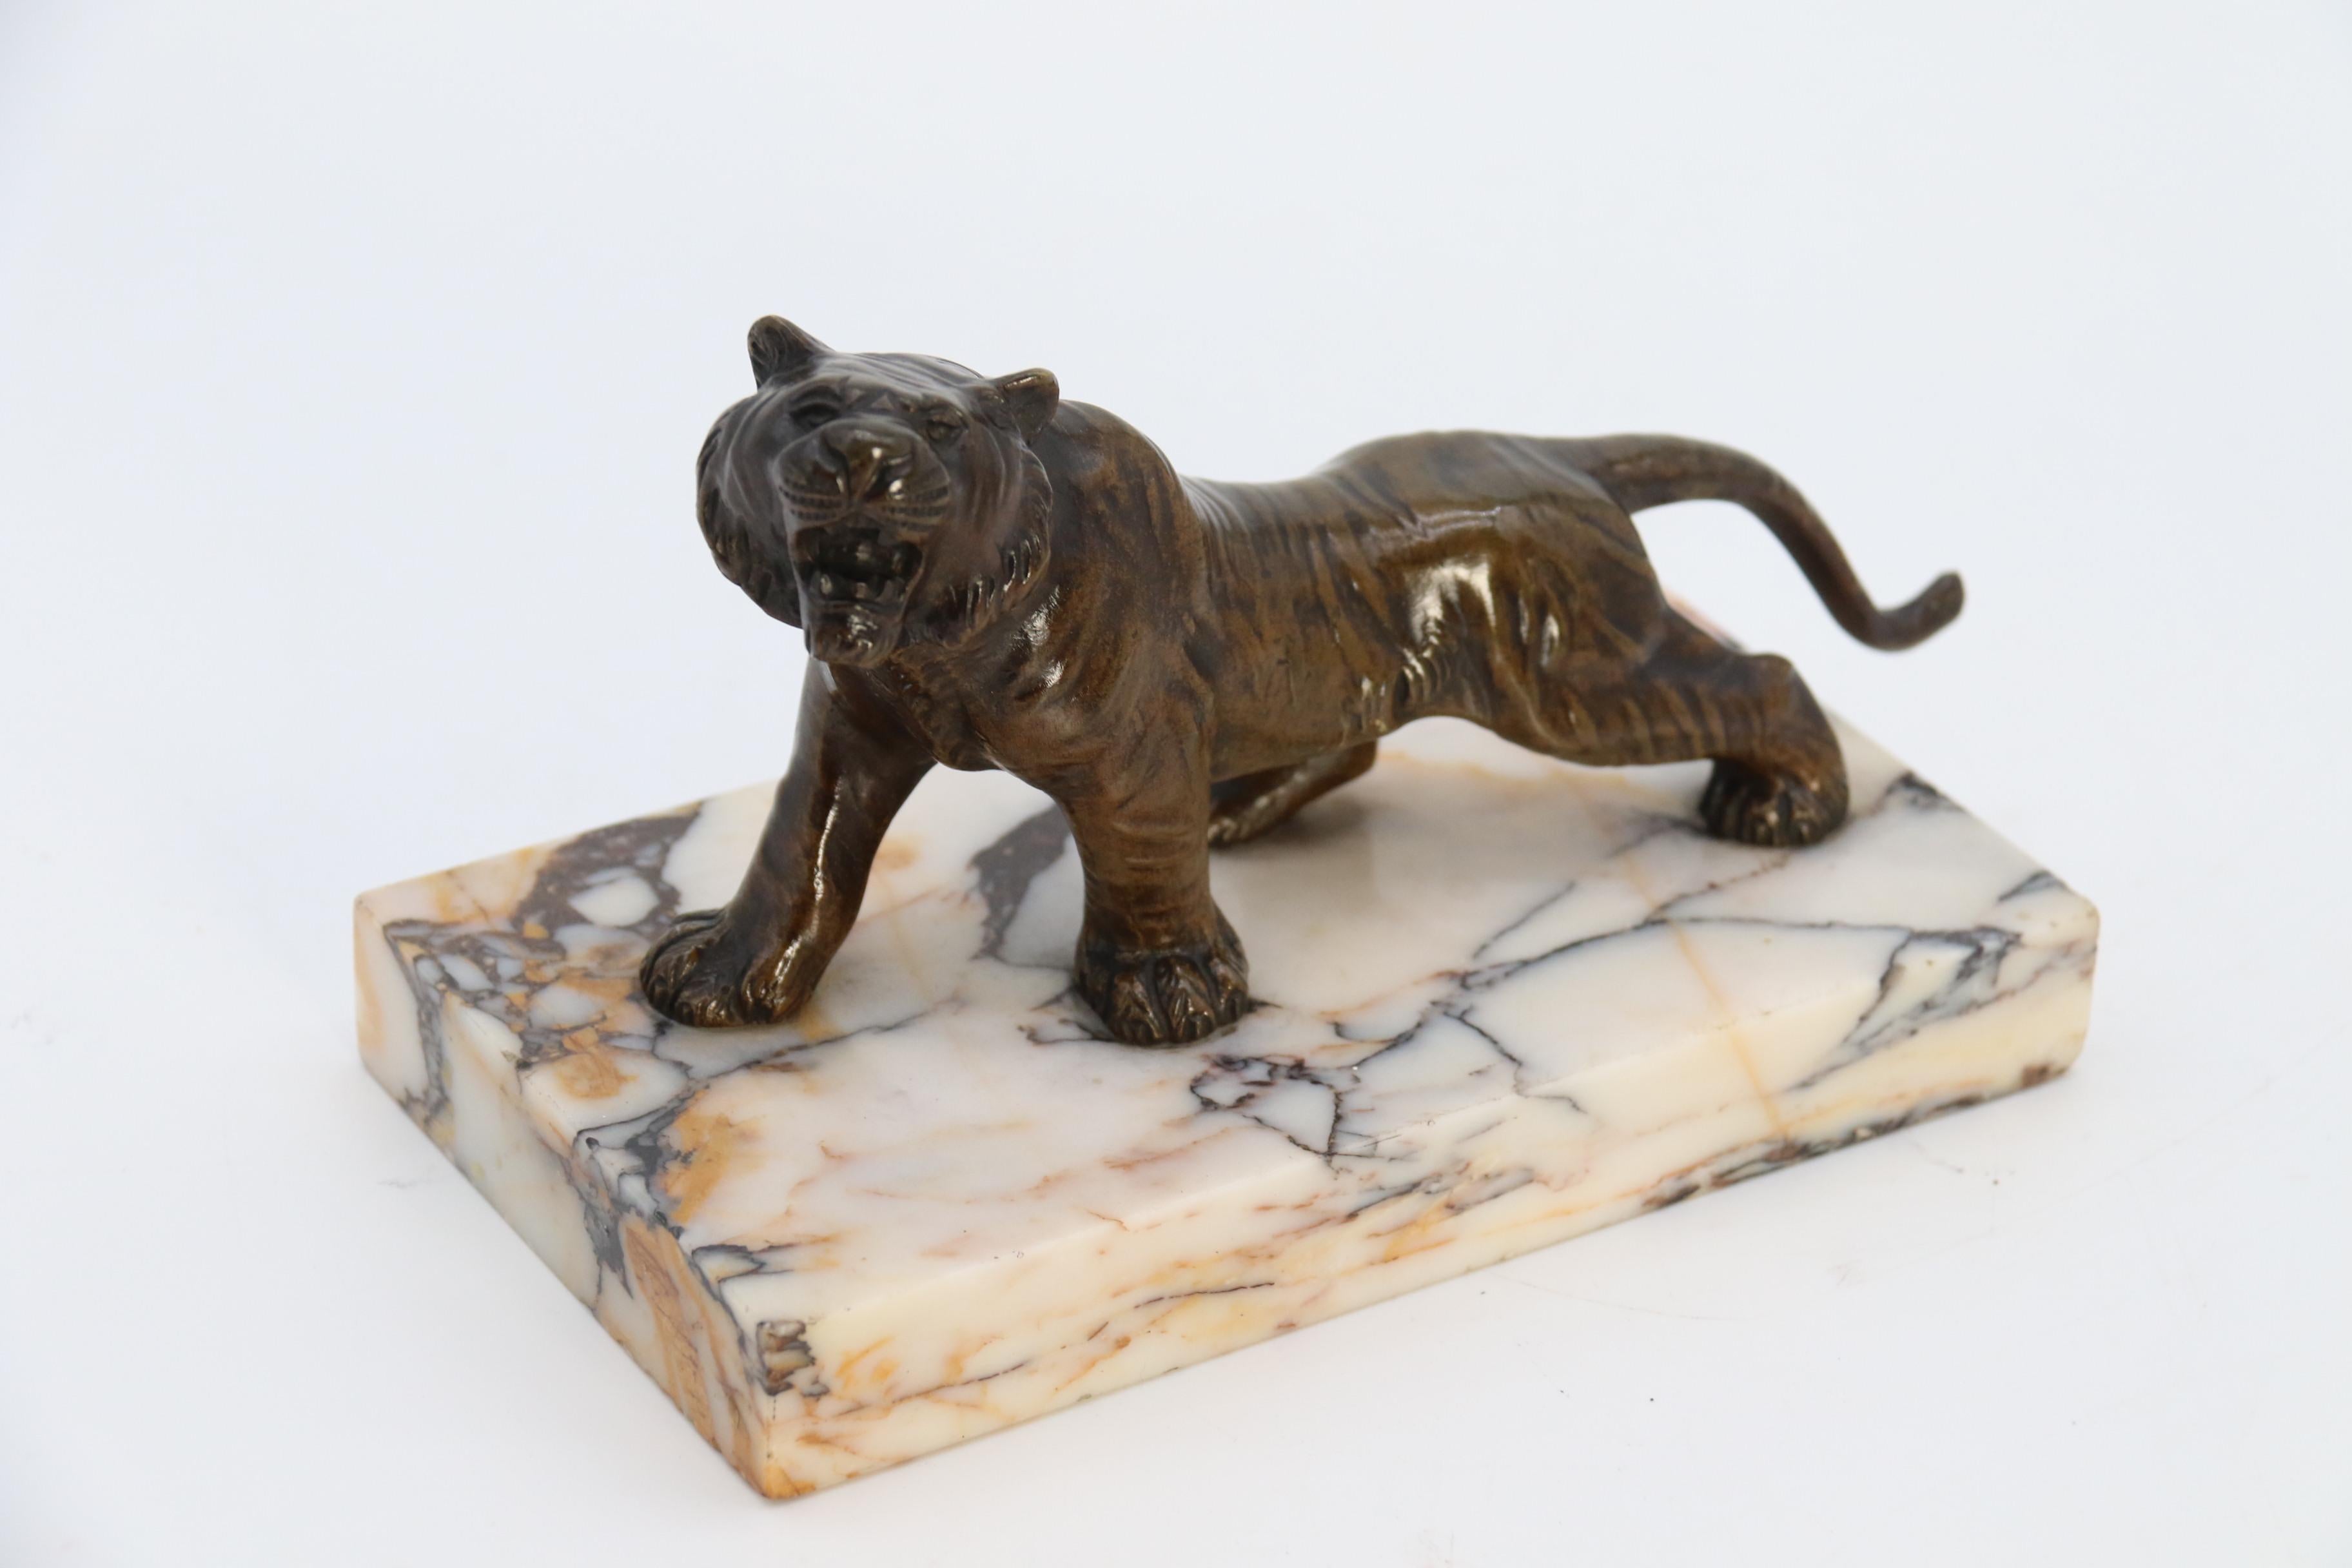 Diese hochwertige und sehr gut modellierte französische Bronzestudie zeigt einen muskulösen Tiger, der mit weit aufgerissenem Maul brüllt und knurrt, vielleicht um einen Rivalen zu warnen oder um eine Gefährtin anzulocken. Diese Studie ist besonders